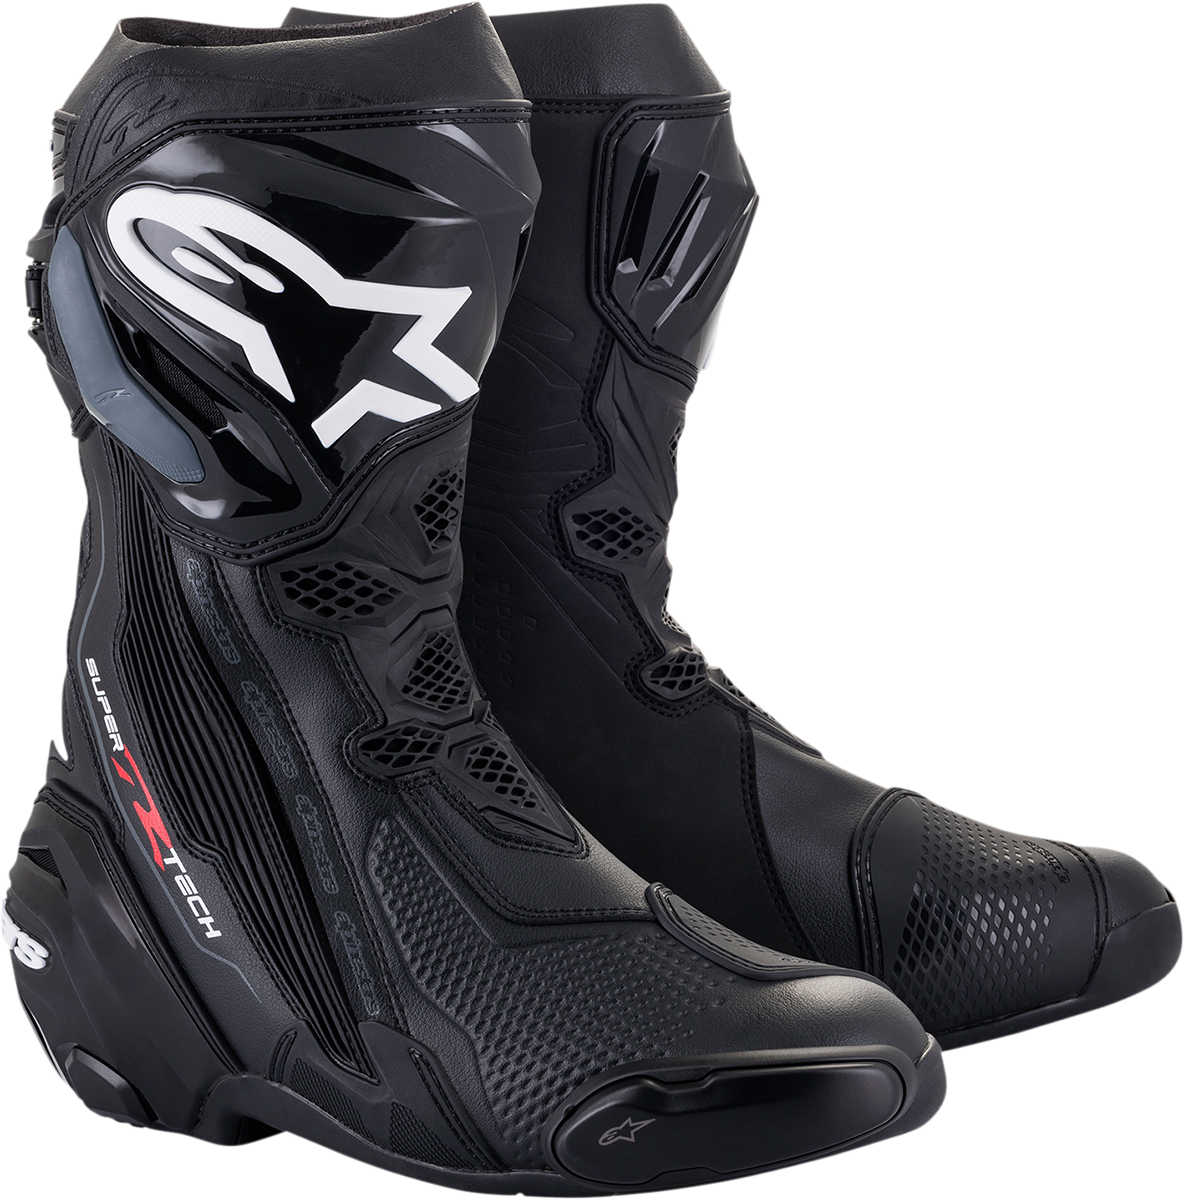 ALPINESTARS Supertech R Boots - Black - US 8 / EU 42 2220021-10-42